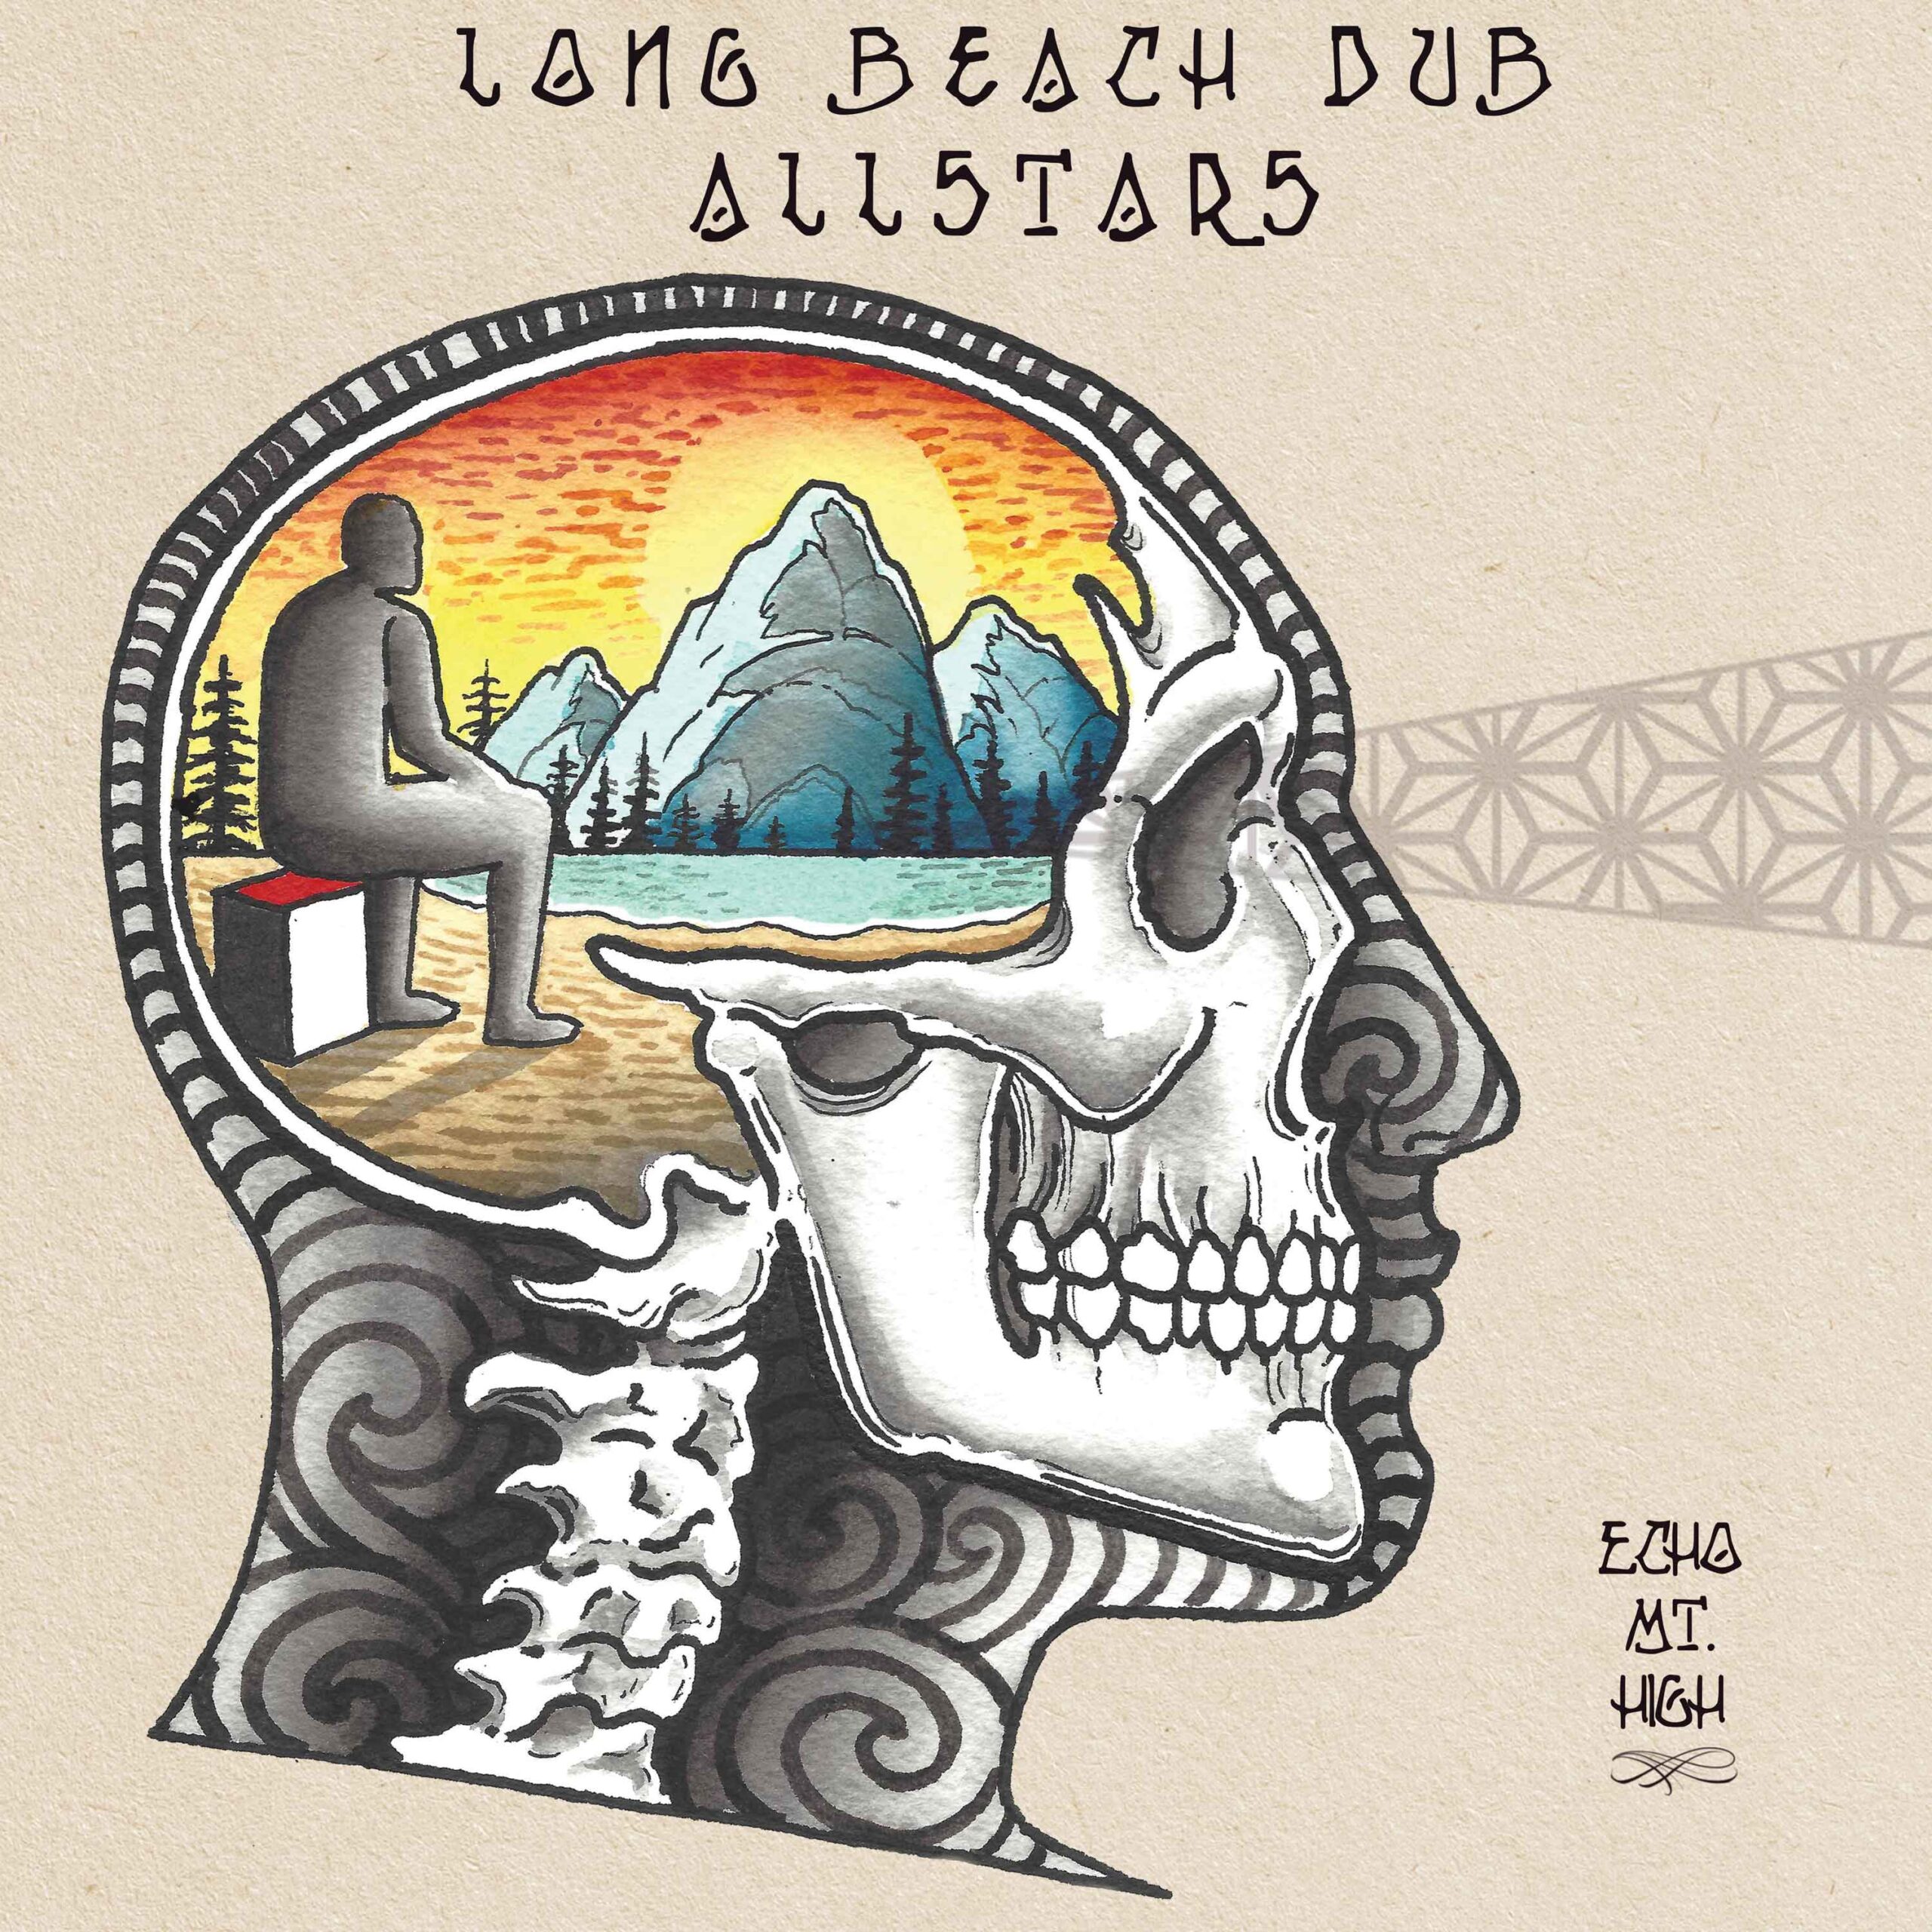 Long Beach Dub Allstars - Echo Mountain High (Album Review) - The 